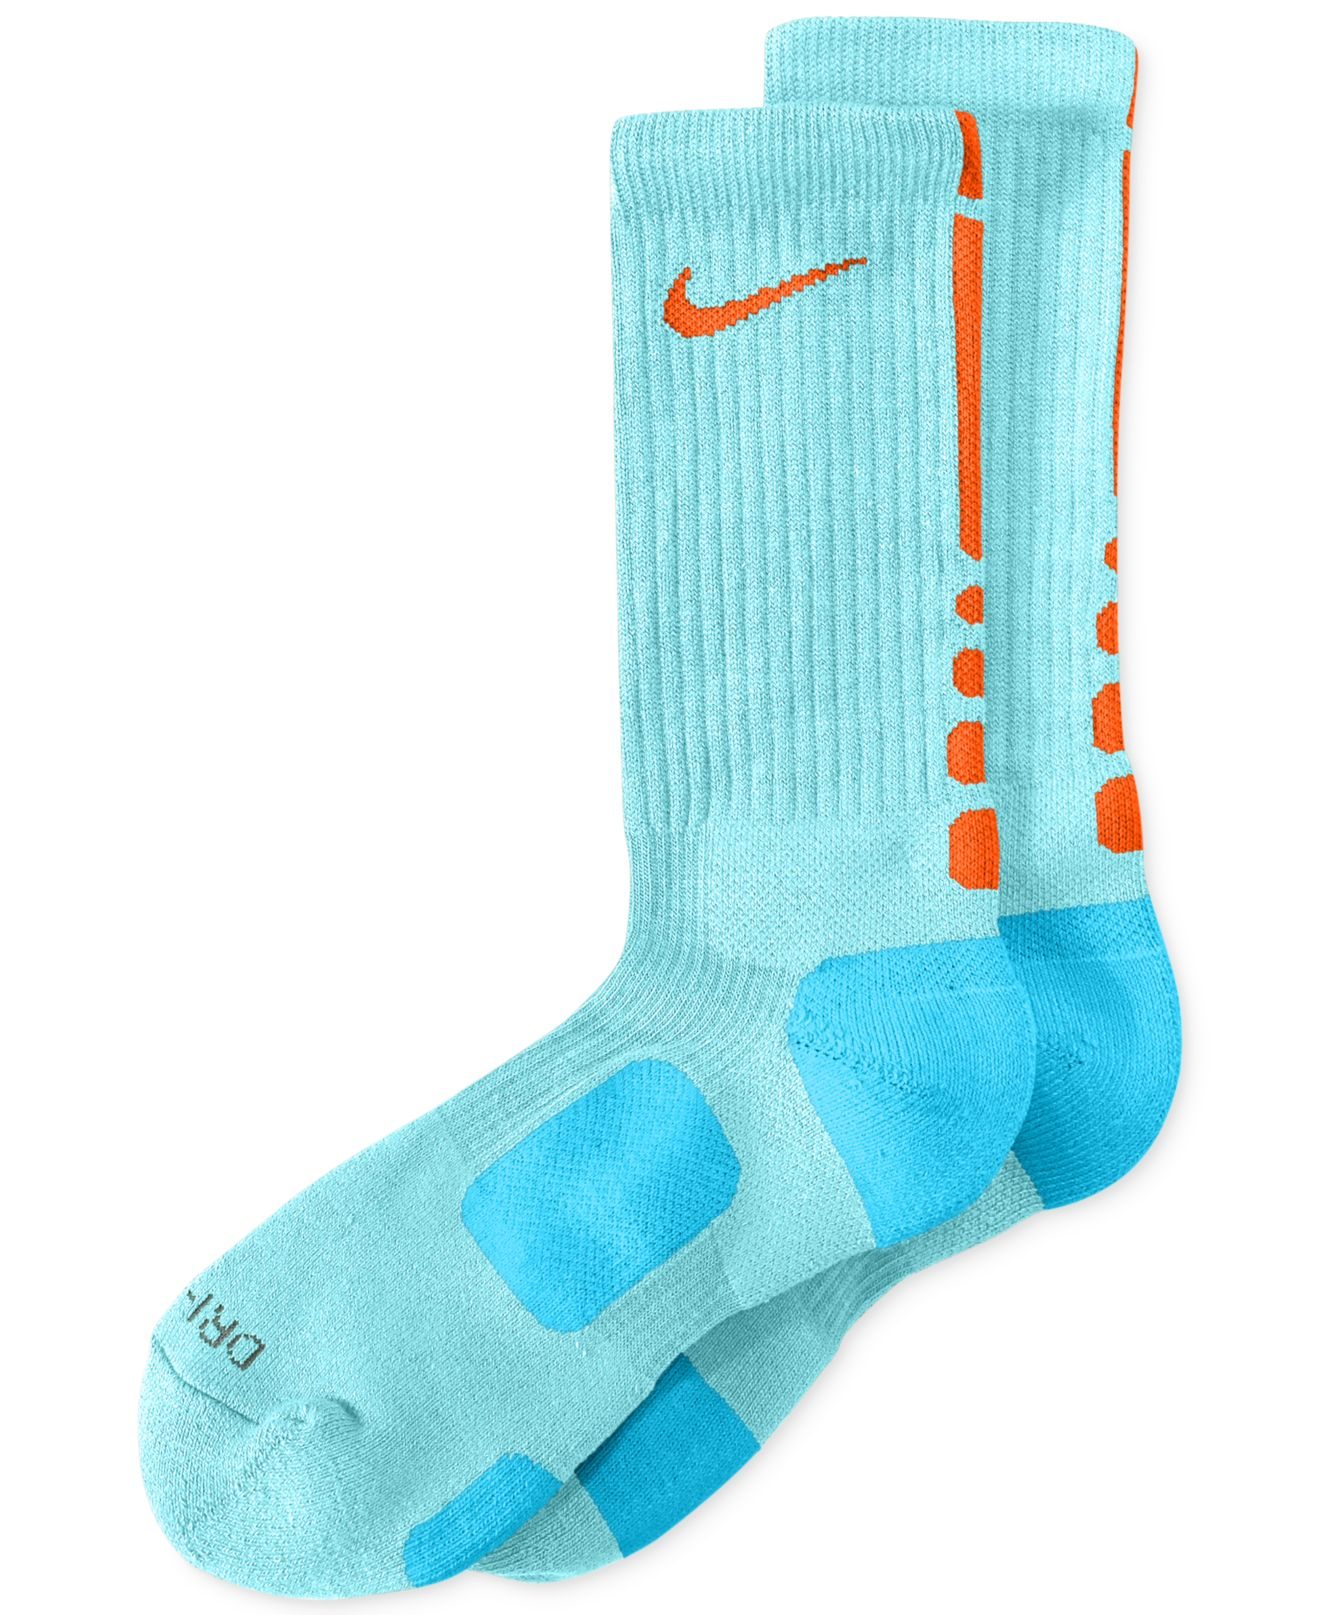 Lyst - Nike Men'S Athletic Elite Performance Basketball Socks in Blue ...